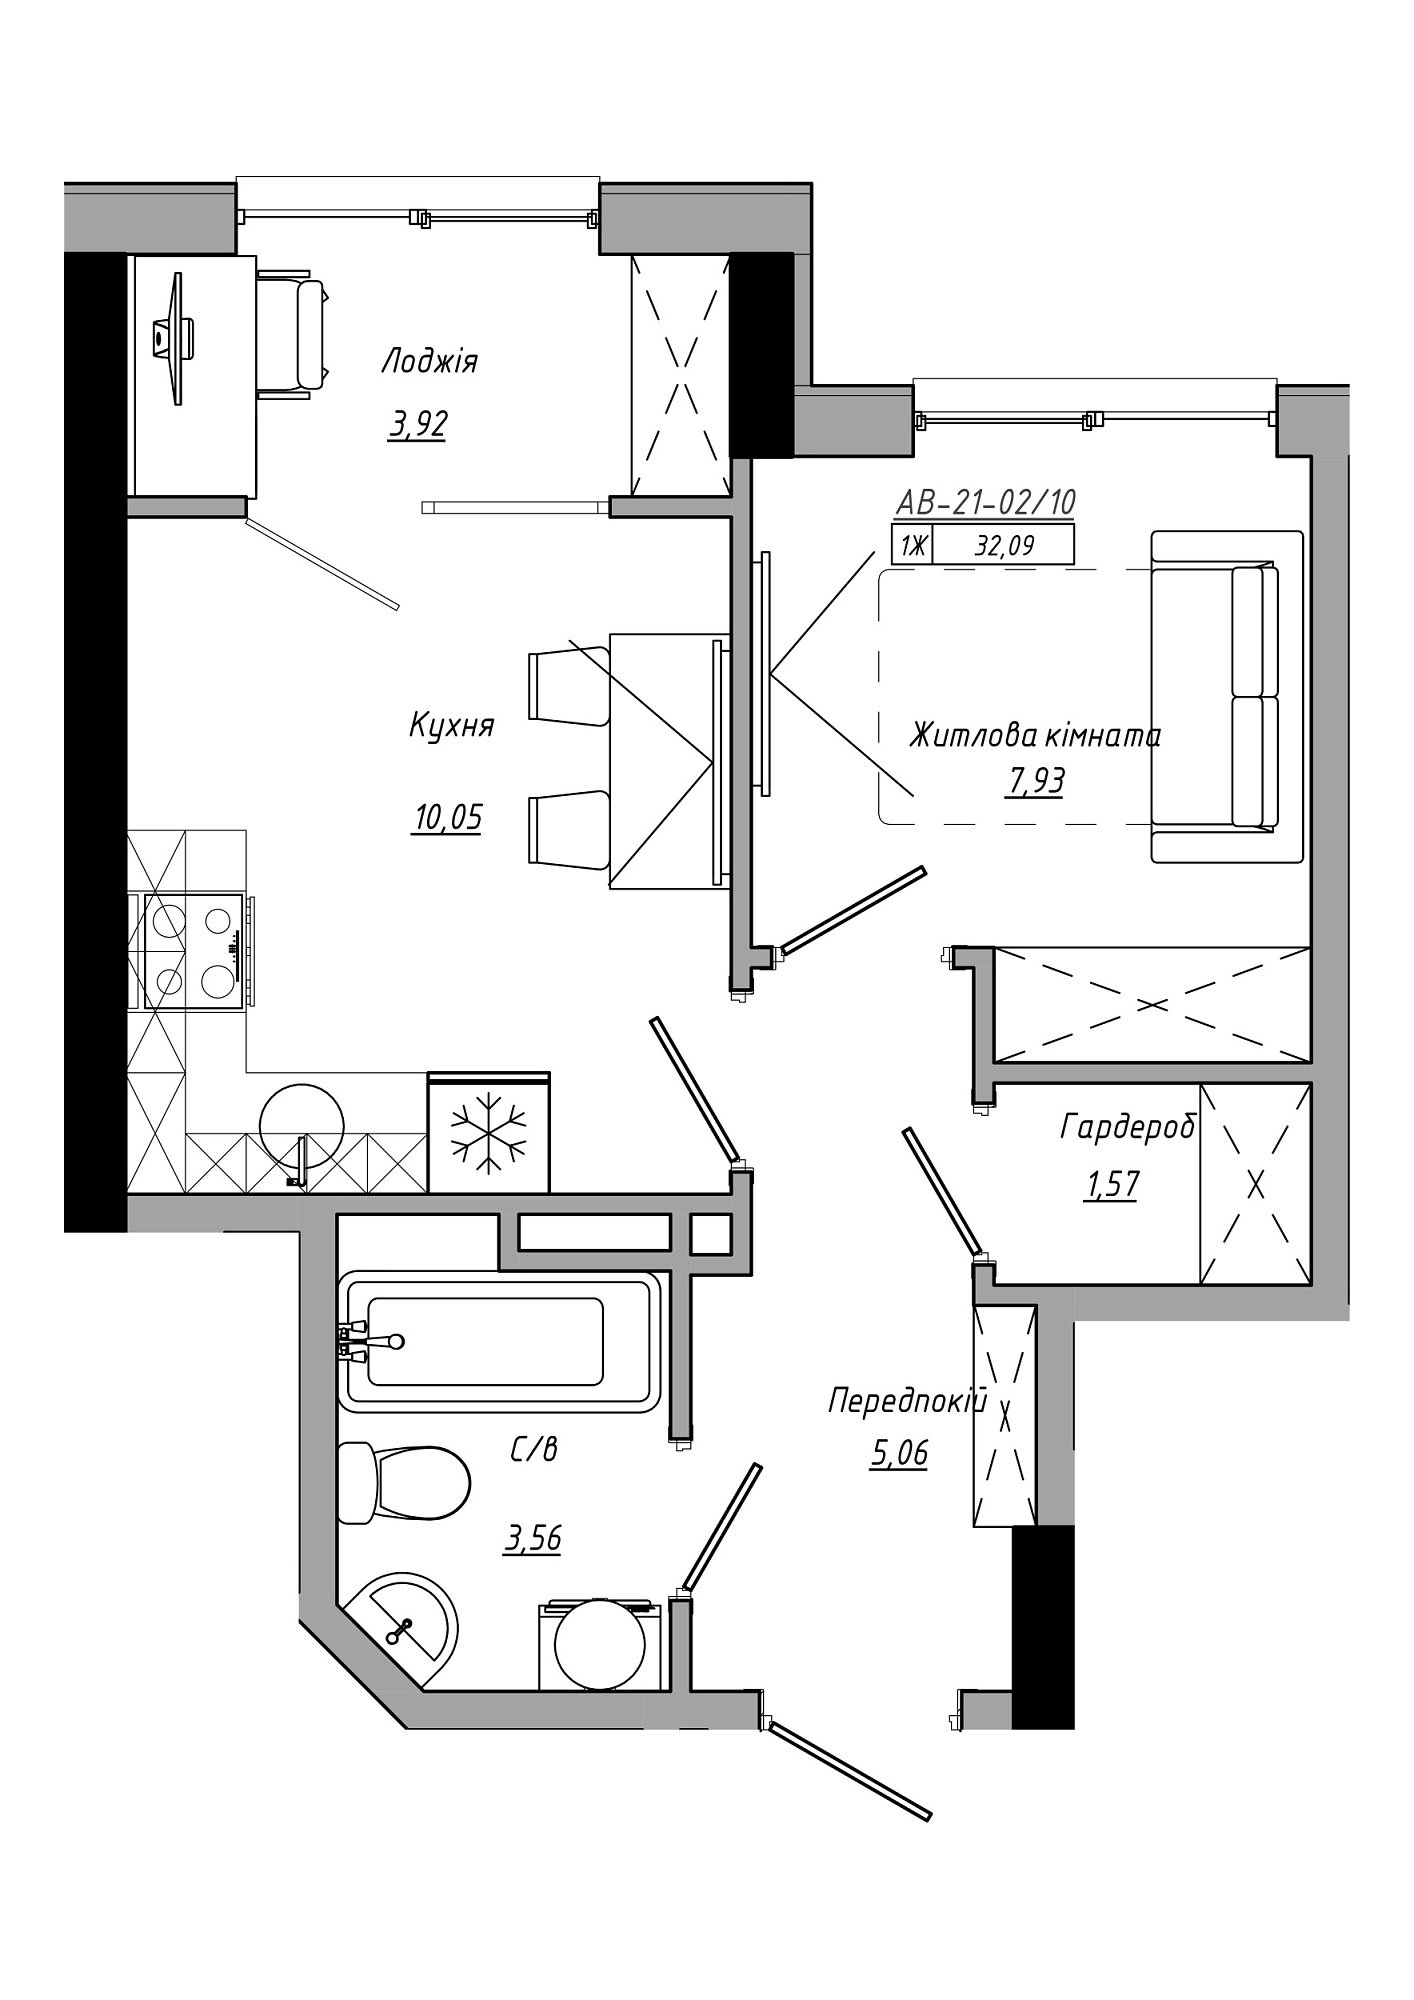 Планування 1-к квартира площею 32.09м2, AB-21-02/00010.